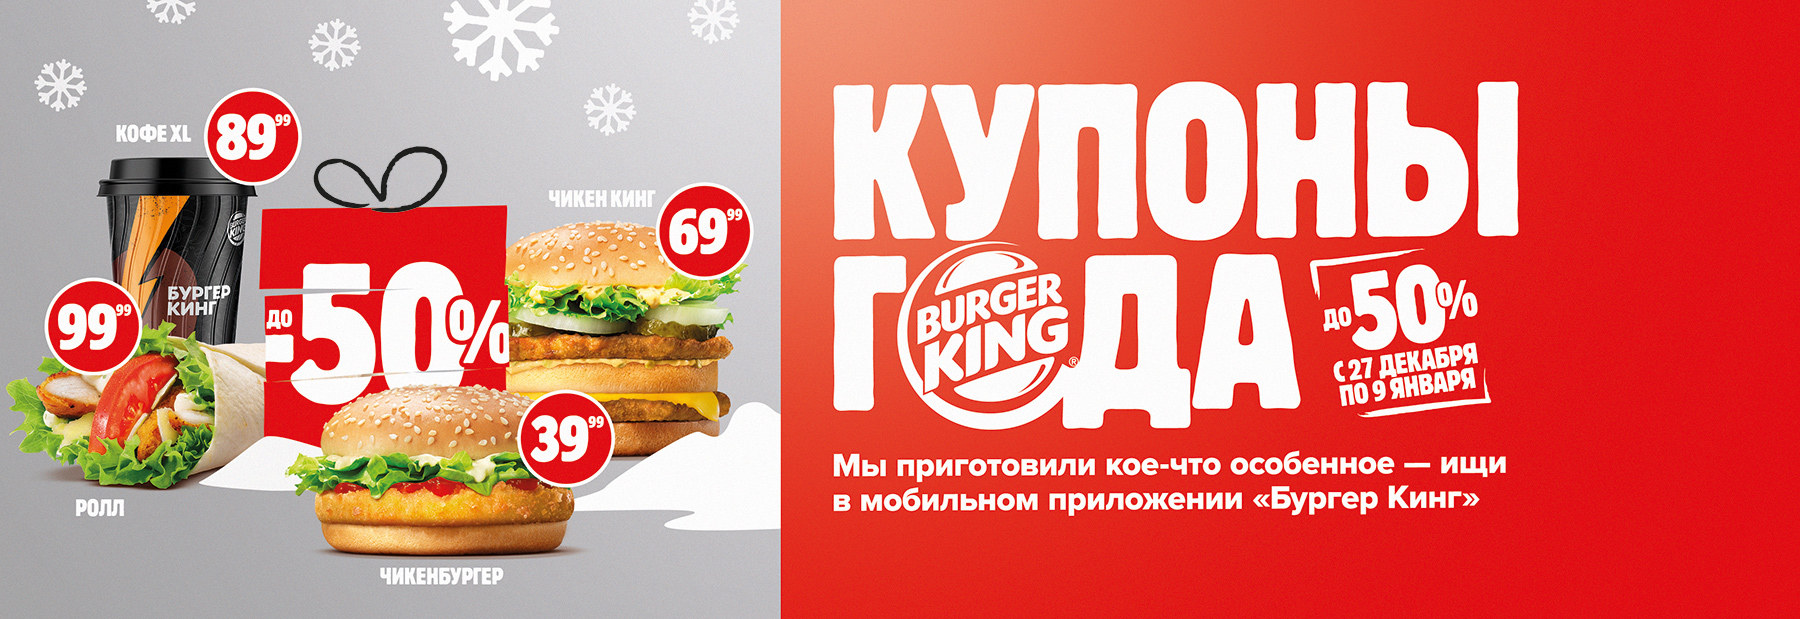 Рекламная акция Бургер Кинг «Купоны года»